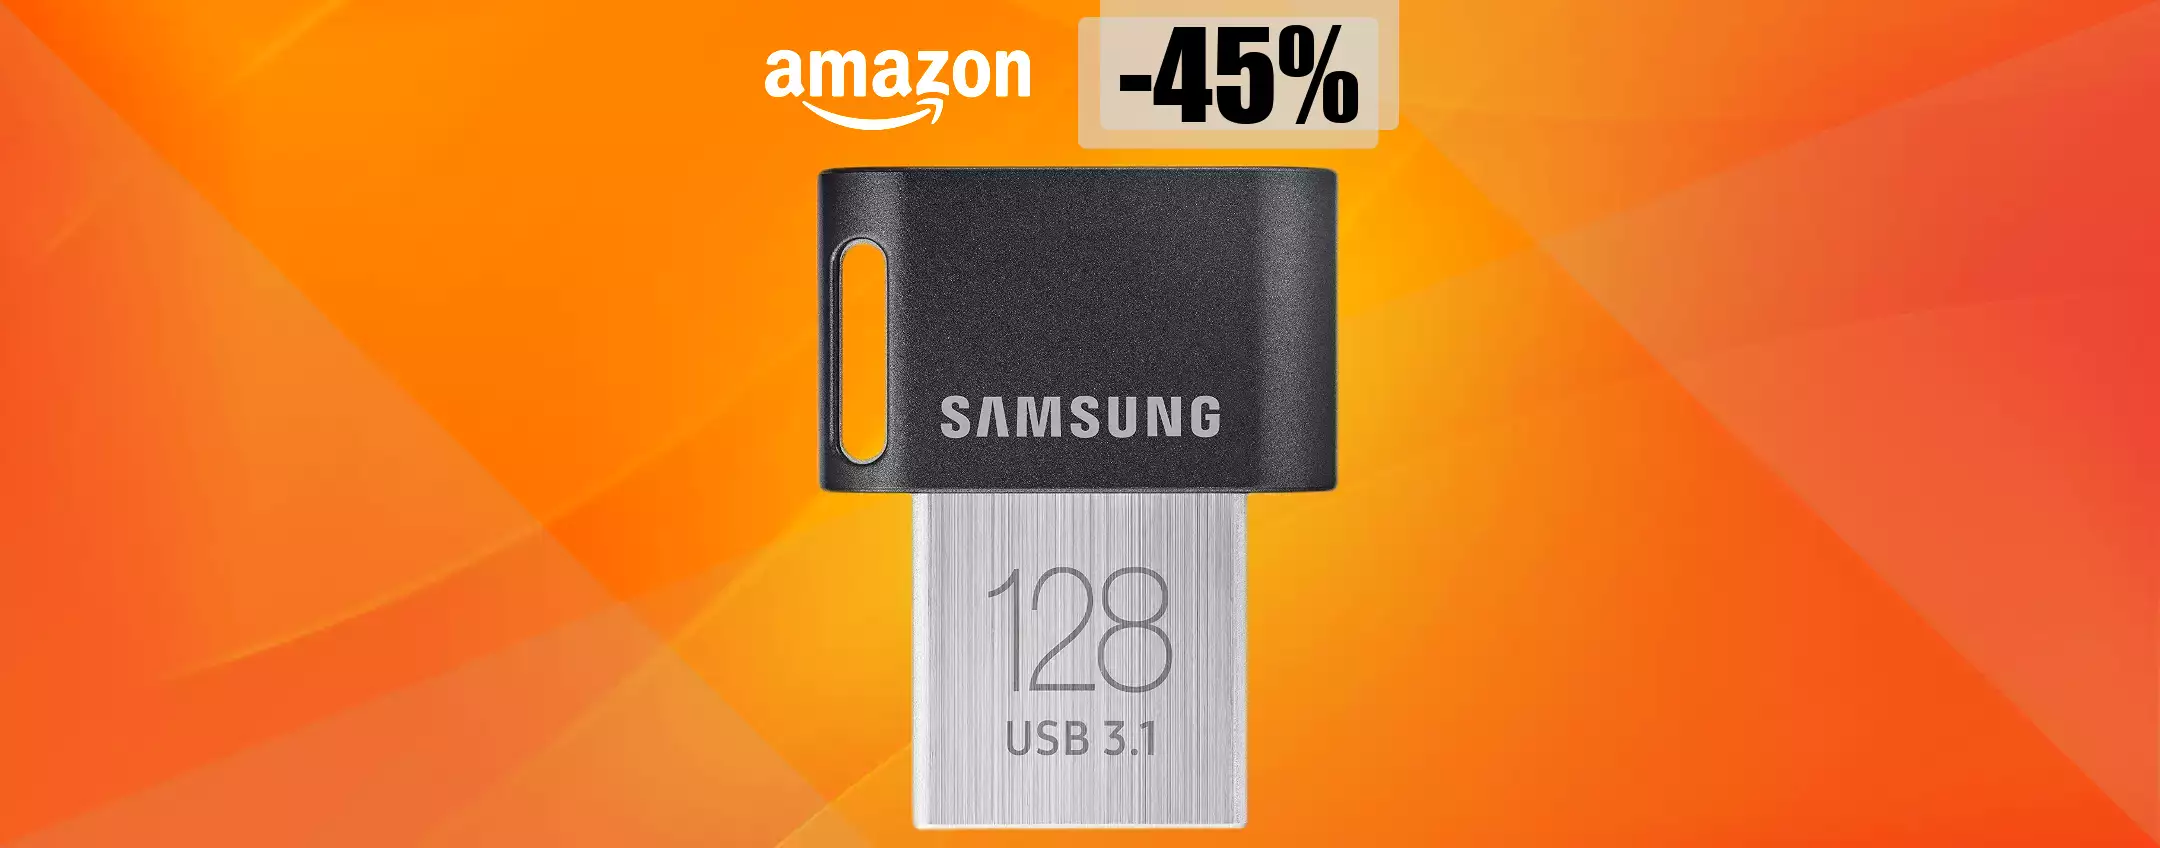 Chiavetta USB 128GB: spazio e velocità in un corpo minuscolo (24€)